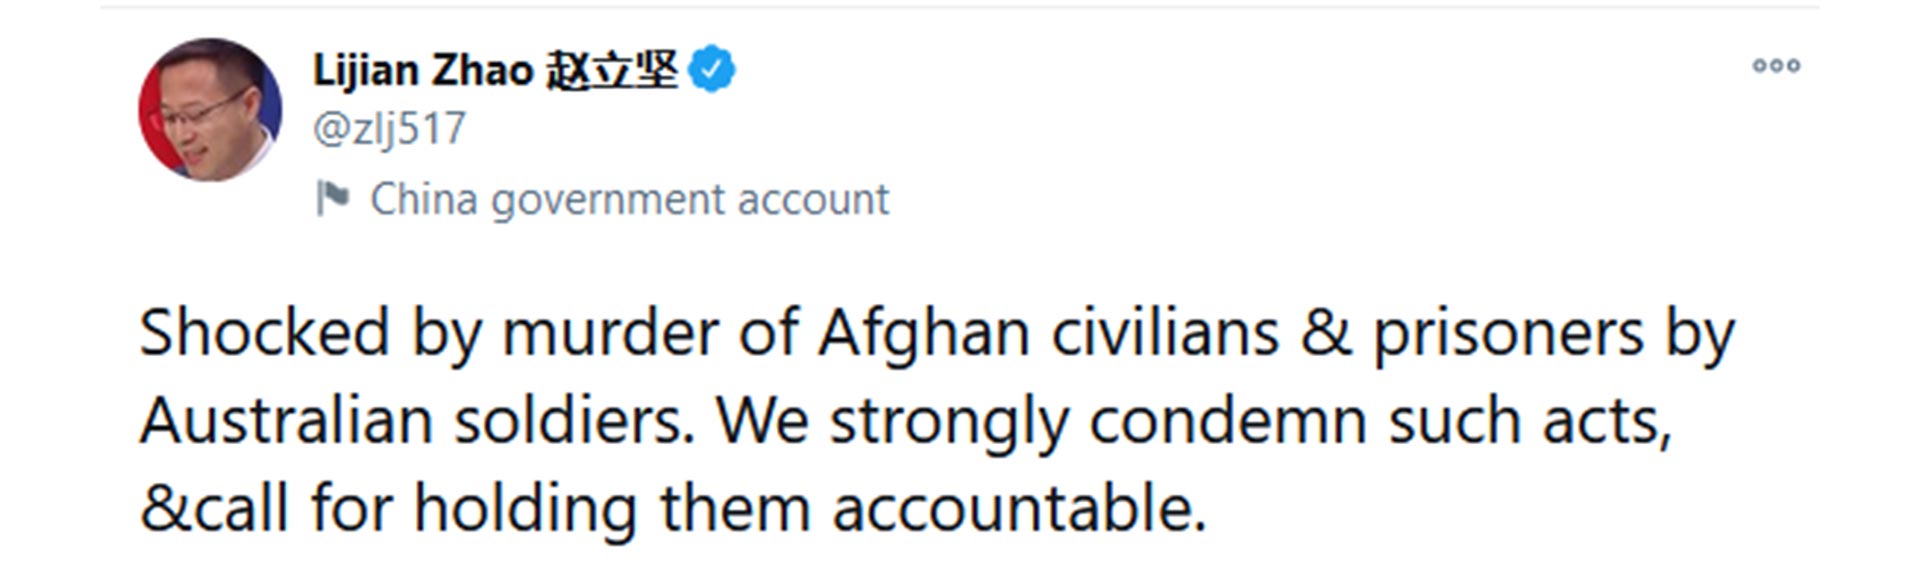 “Conmocionado por el asesinato de civiles y prisioneros afganos a manos de soldados australianos. Condenamos esos actos de manera firme y pedimos que rindan cuentas”